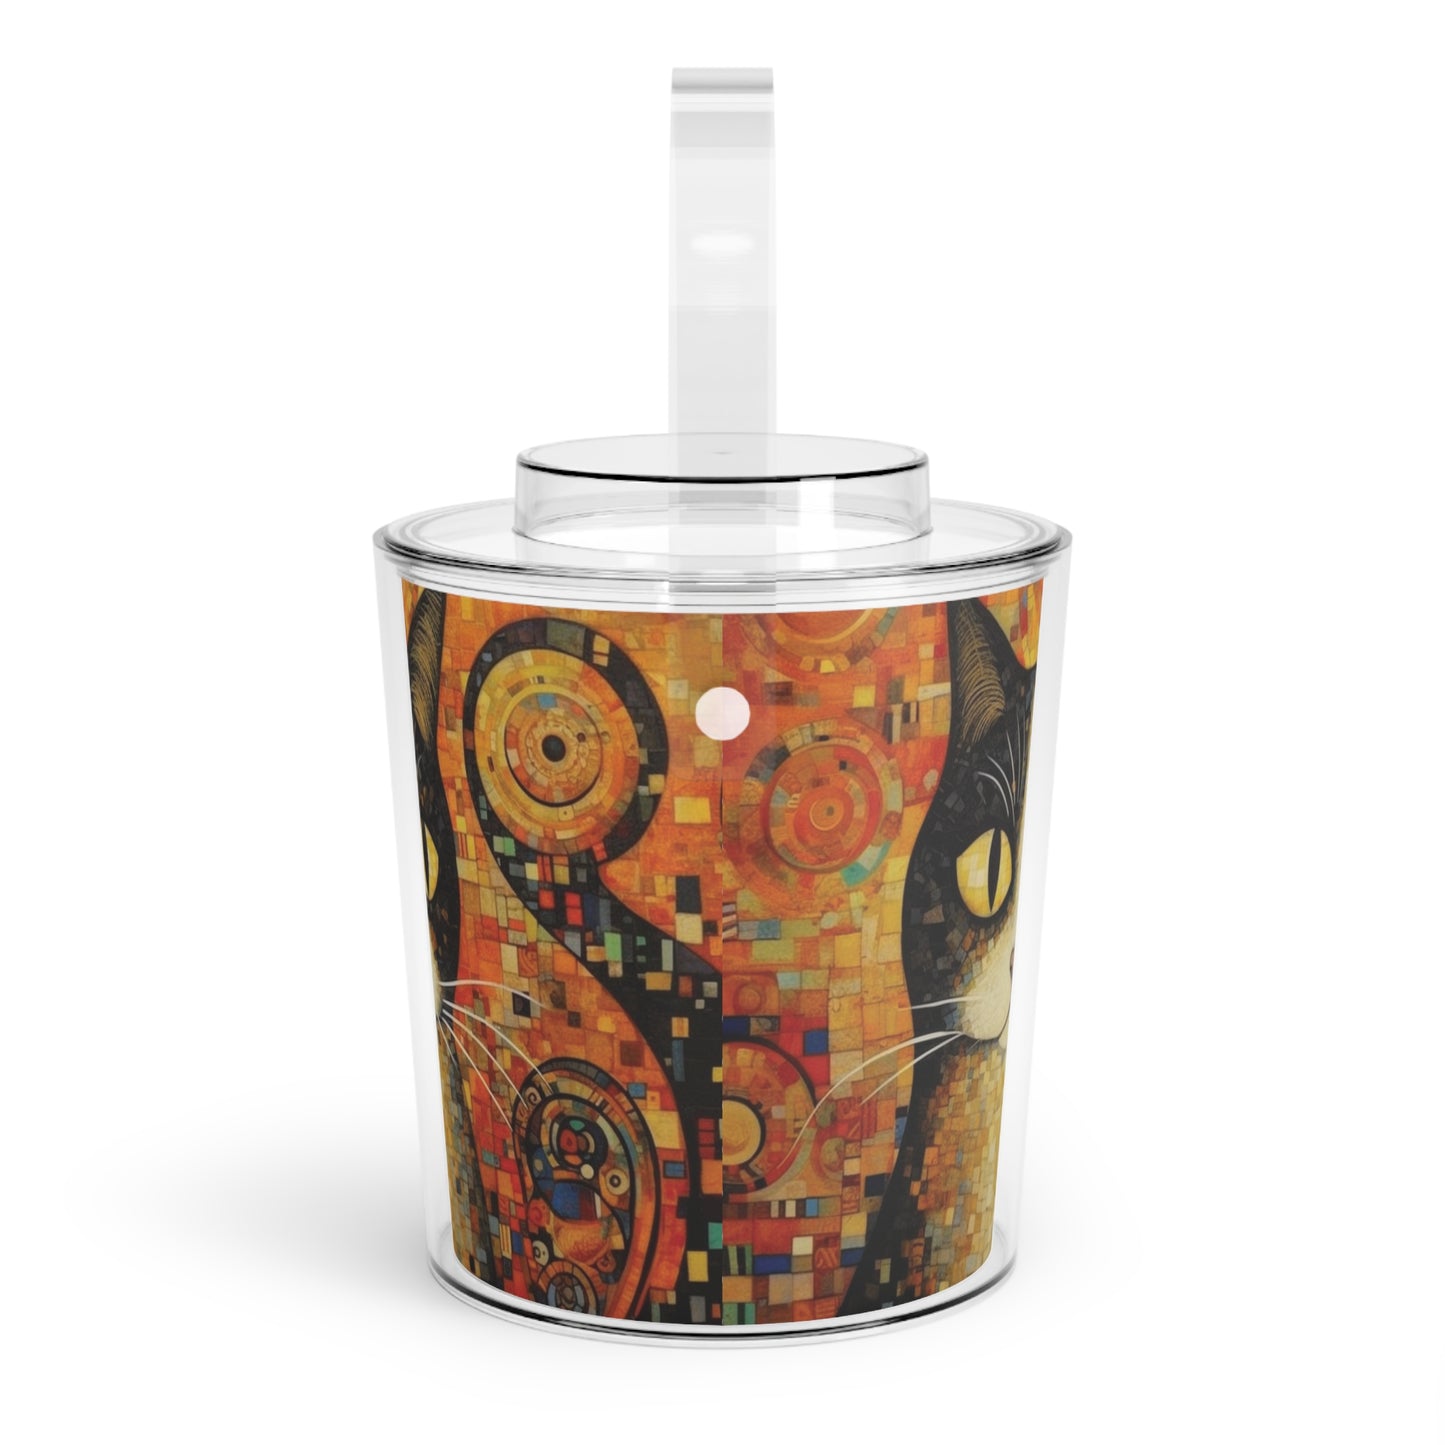 Symbolic Elegance: Gustav Klimt-Inspired Ice Bucket with Tongs